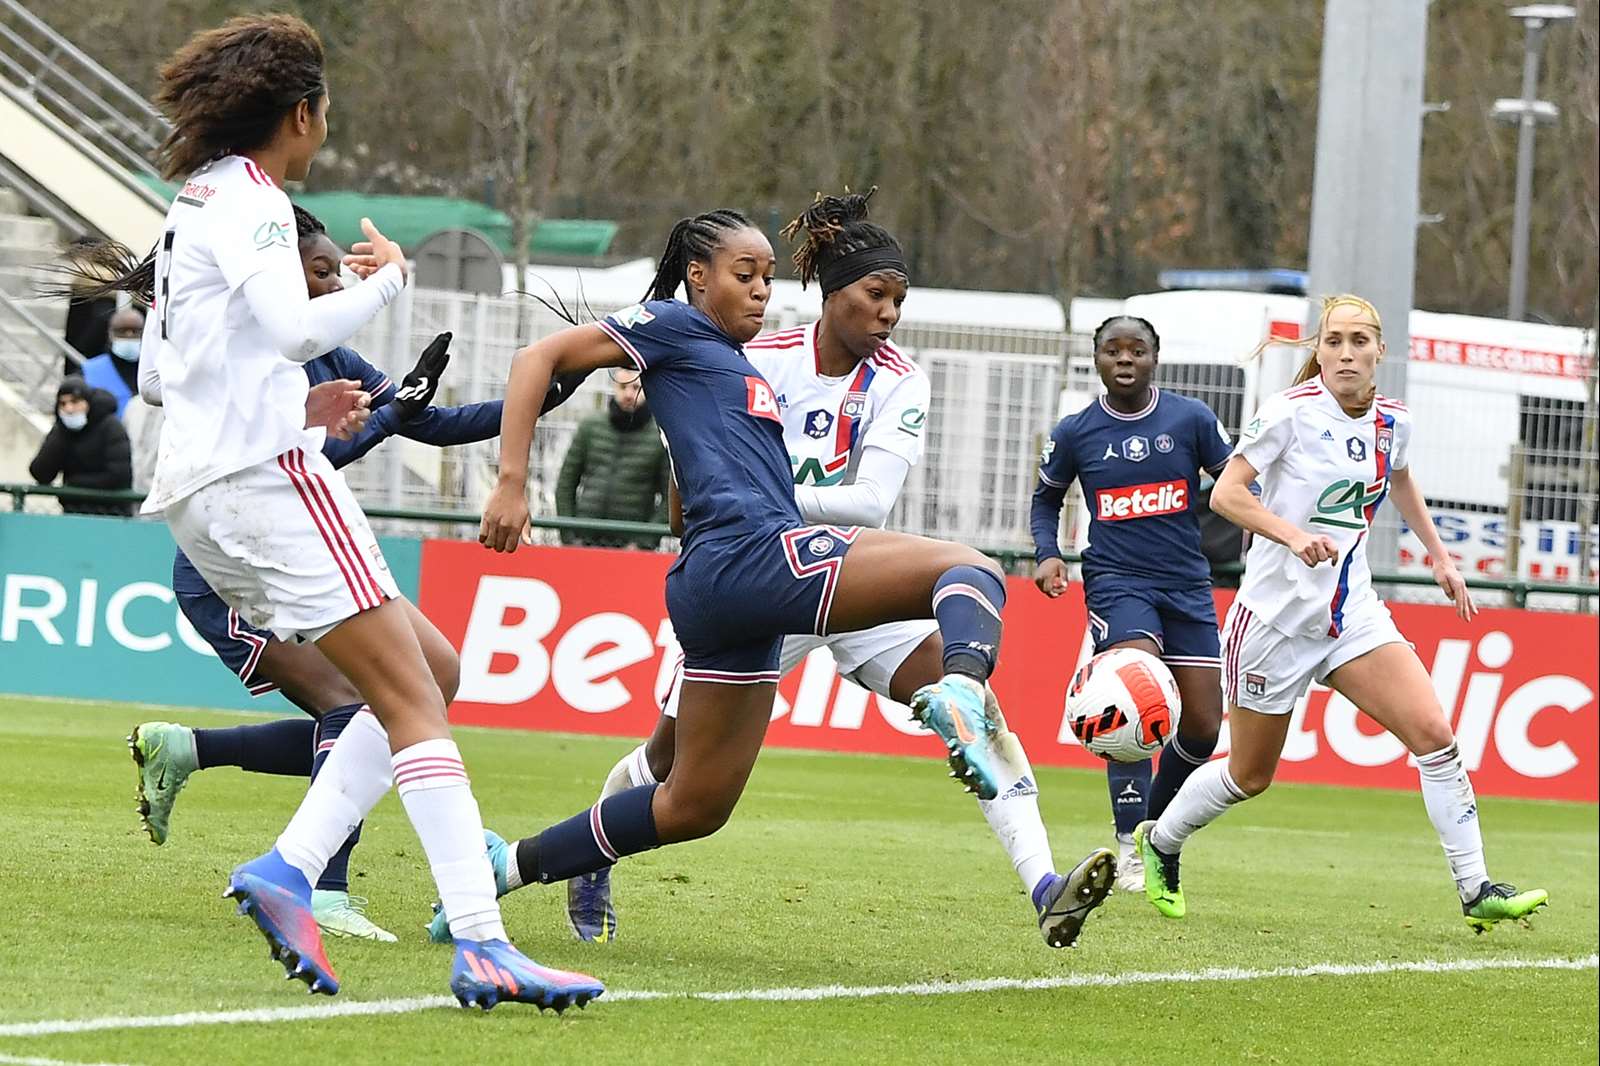 Futebol Feminino: Benfica, Lyon, PSG e Paris FC fazem o pleno de vitórias